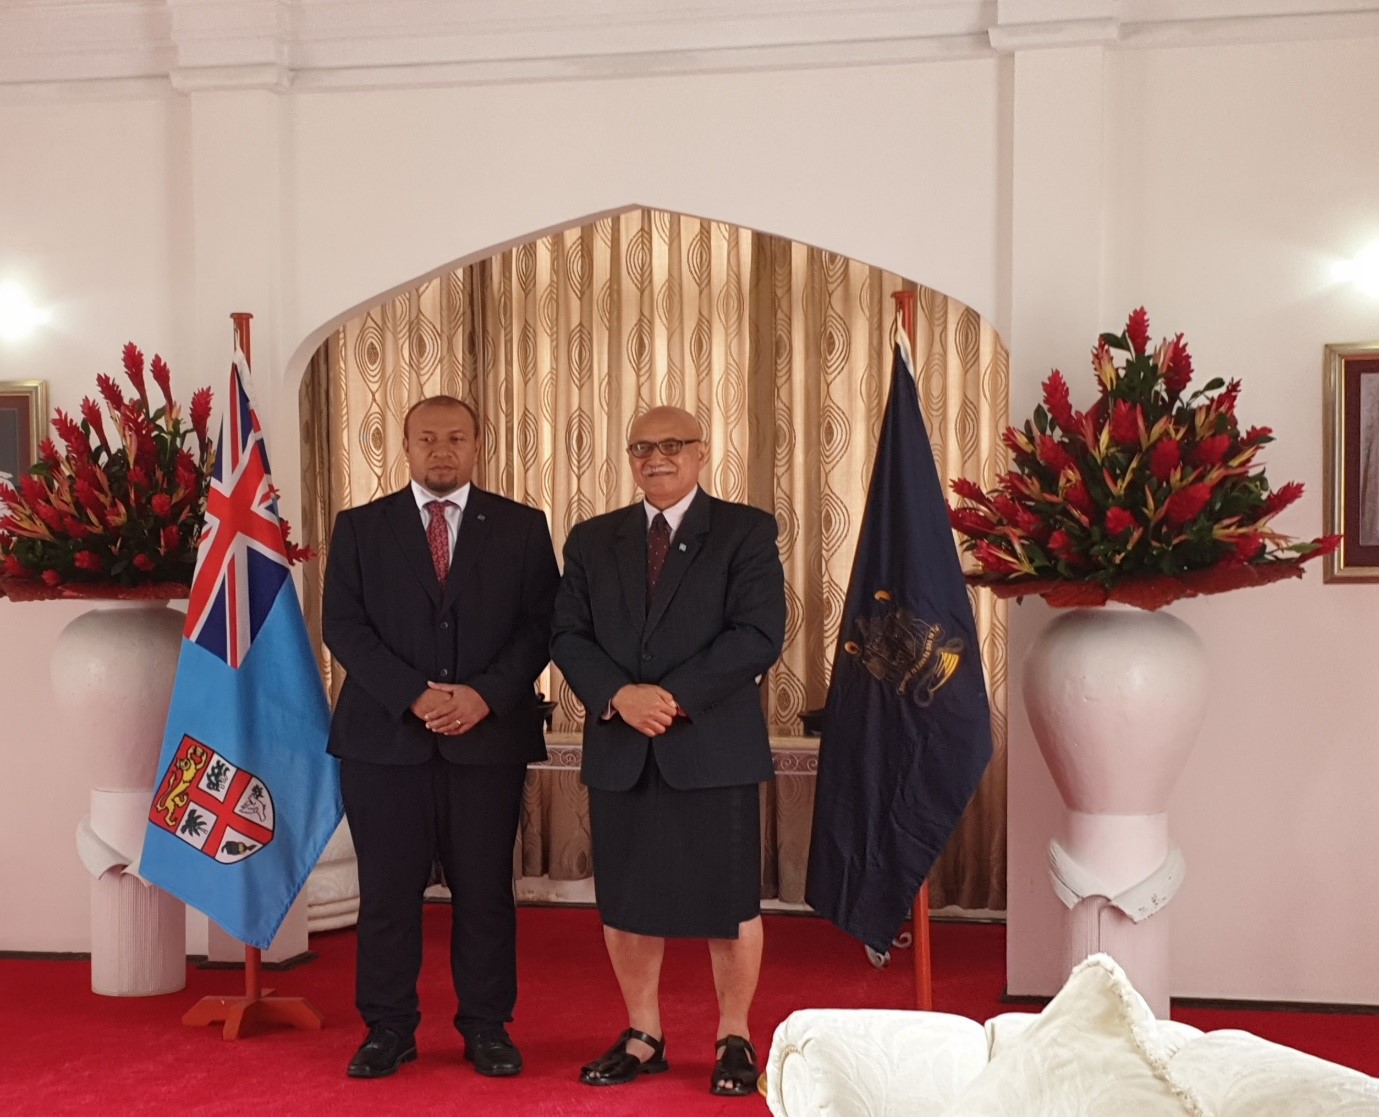 H.E. William Soaki and H.E Major-General (retired) Jioji Konrote, President of Fiji at the presentation of credentials ceremony in Suva